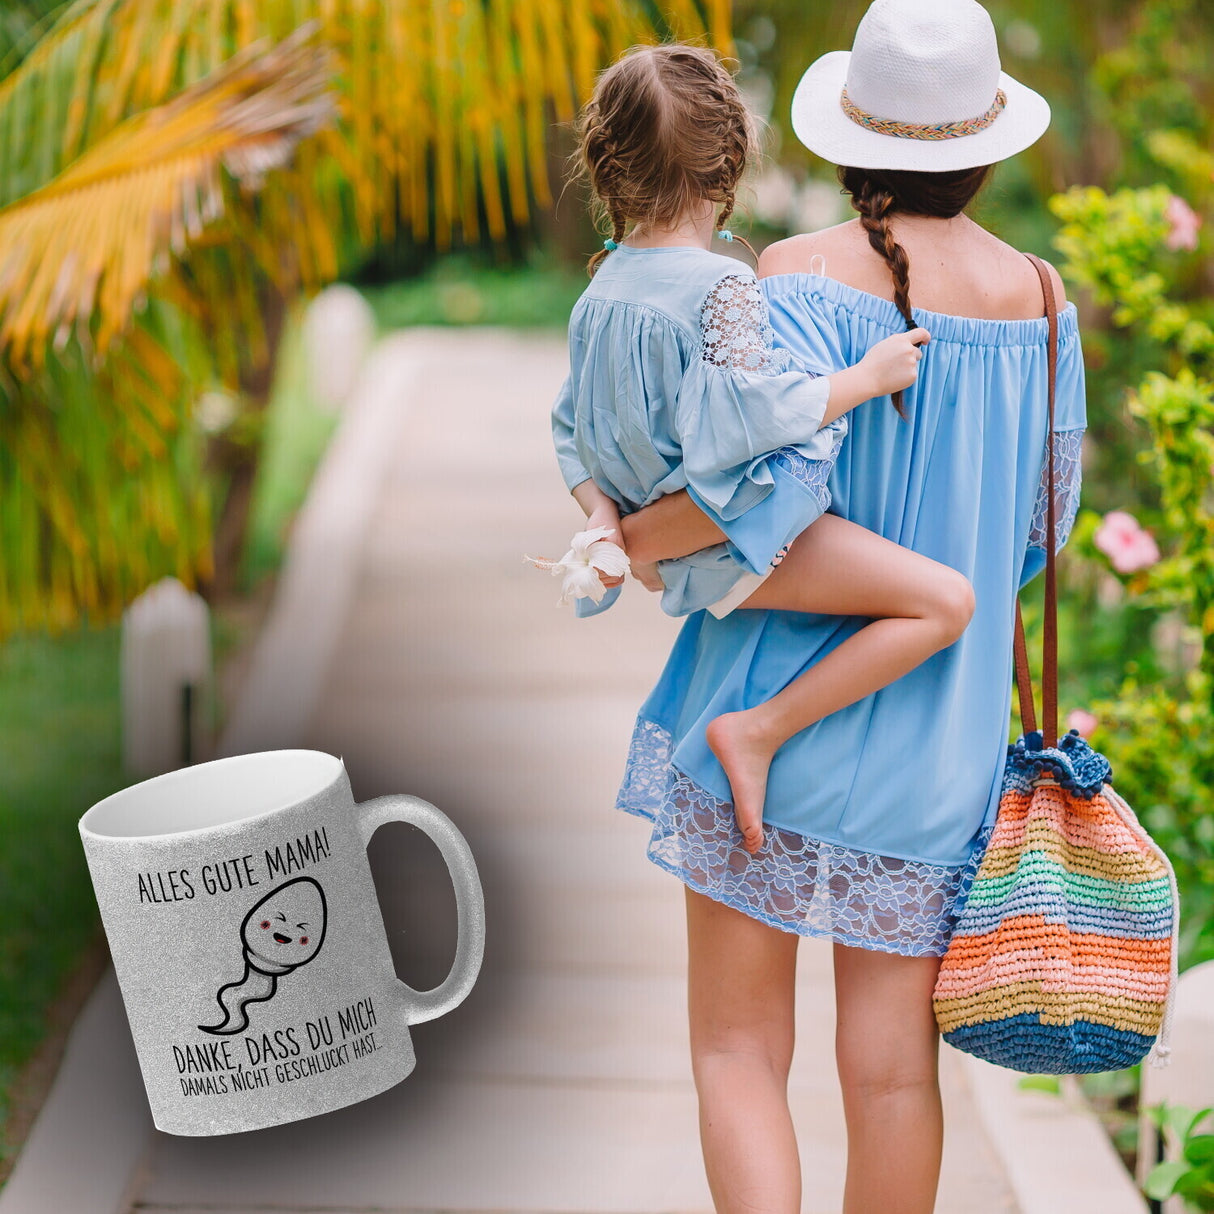 Spermium Muttertag Kaffeebecher mit Spruch Alles gute Mama